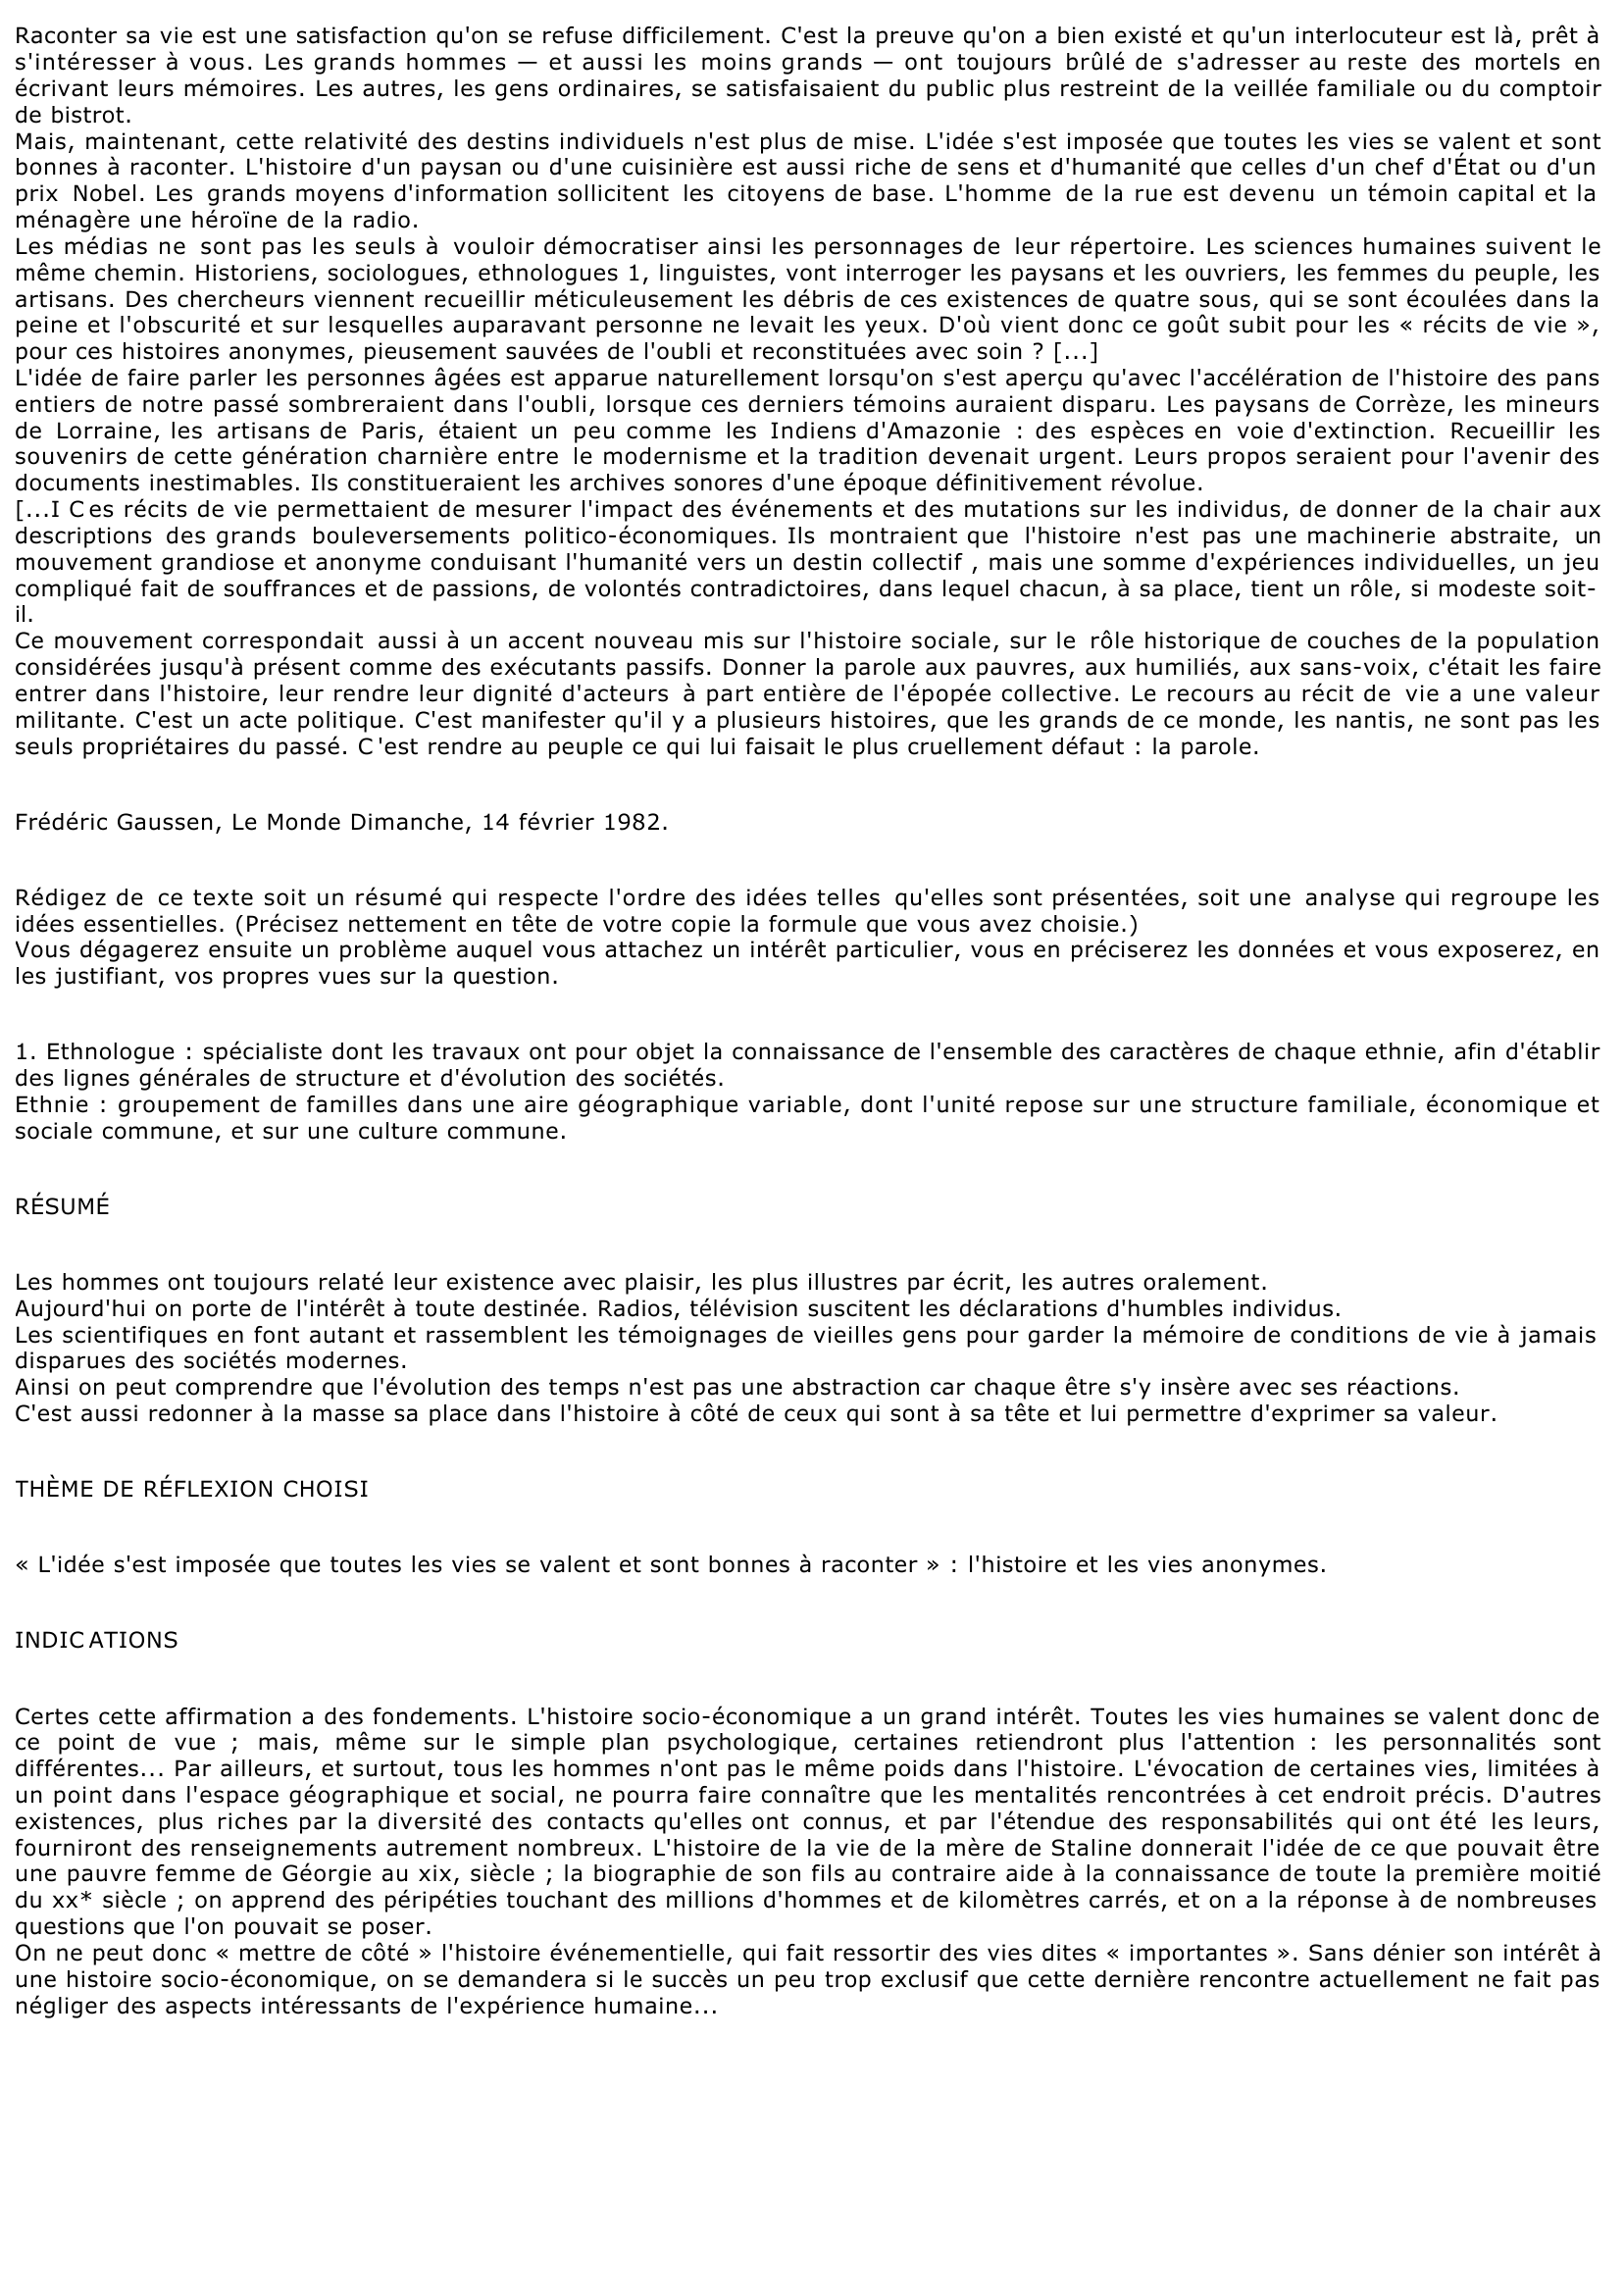 Prévisualisation du document Frédéric Gaussen, Le Monde Dimanche, 14 février 1982 (Littérature)